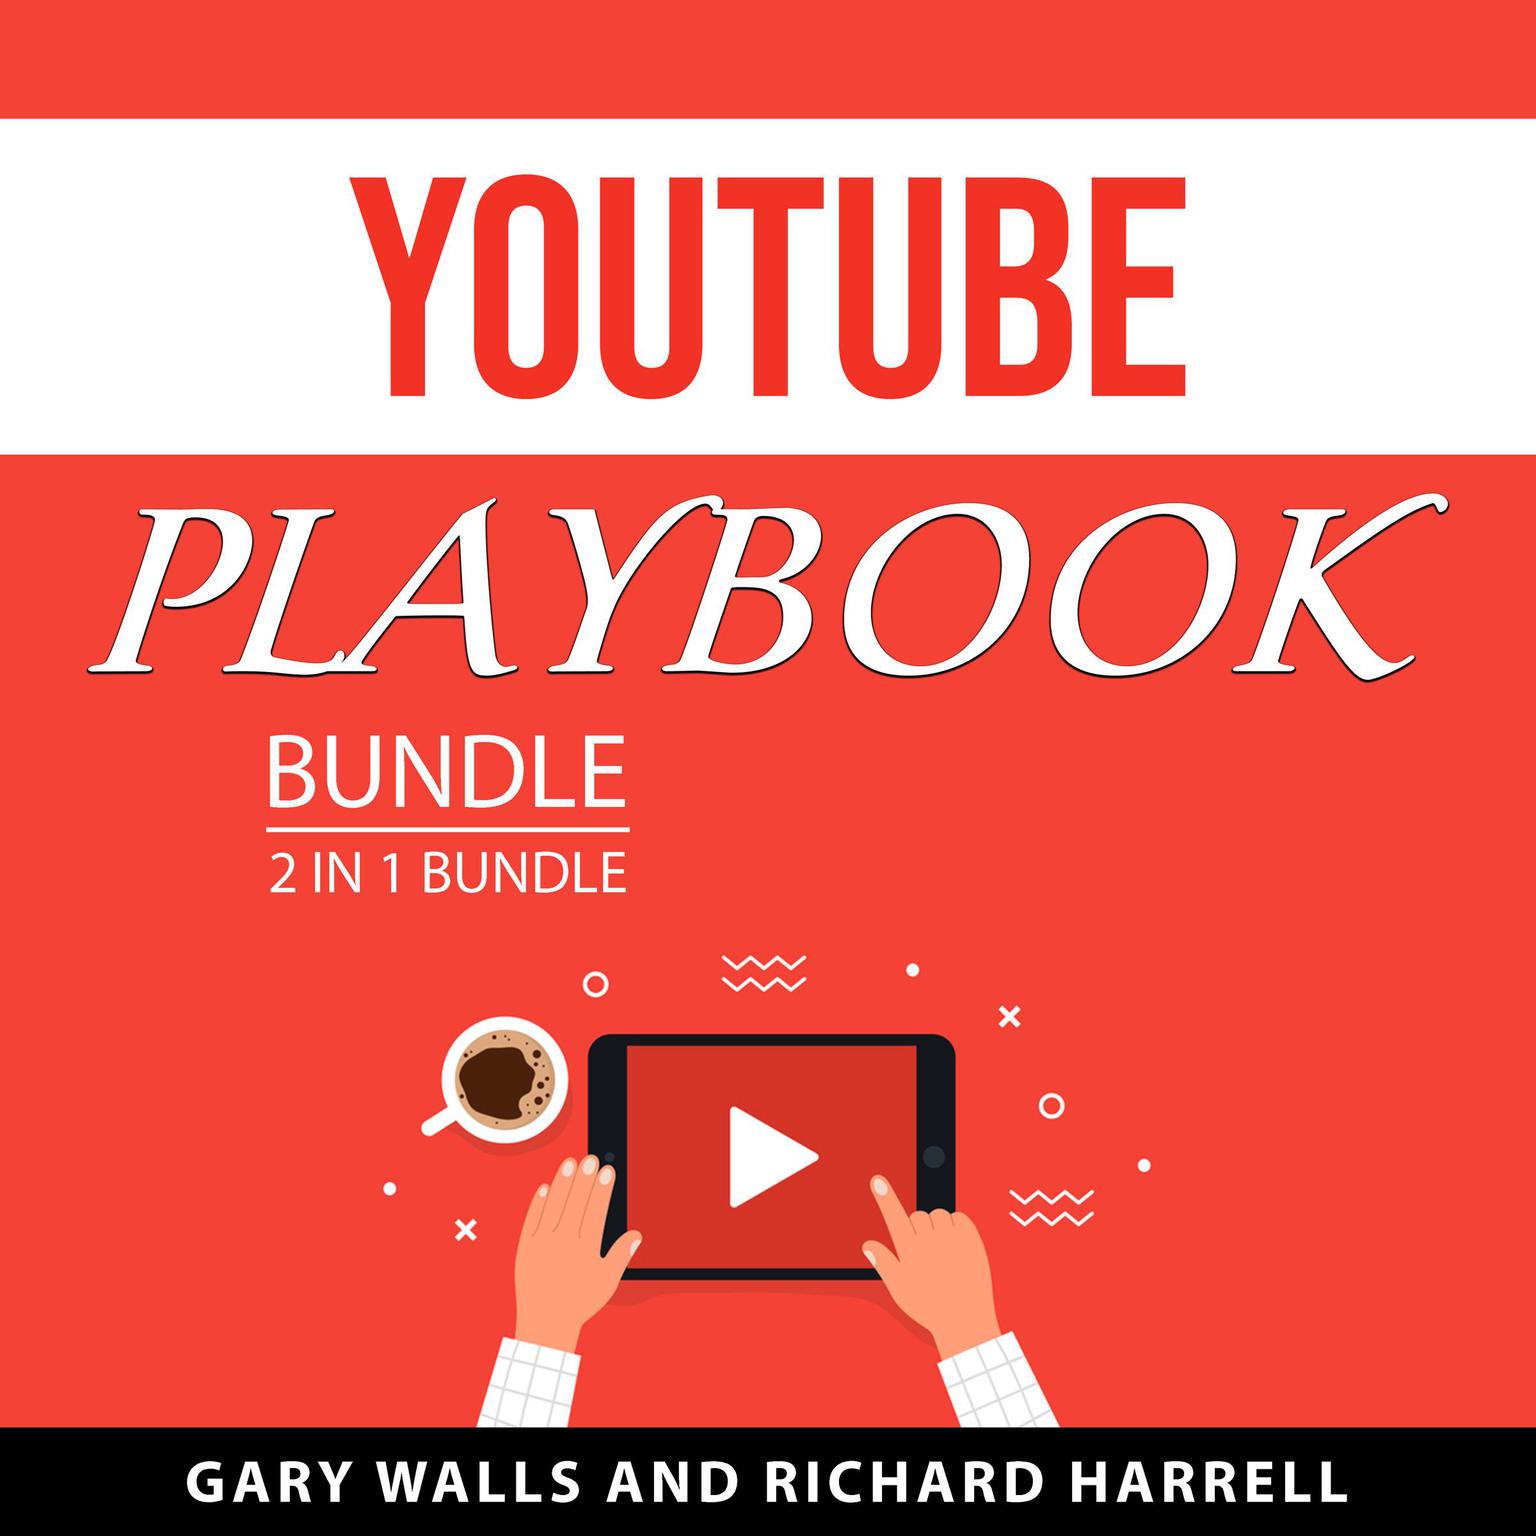 YouTube Playbook Bundle, 2 in 1 bundle Audiobook, by Gary Walls